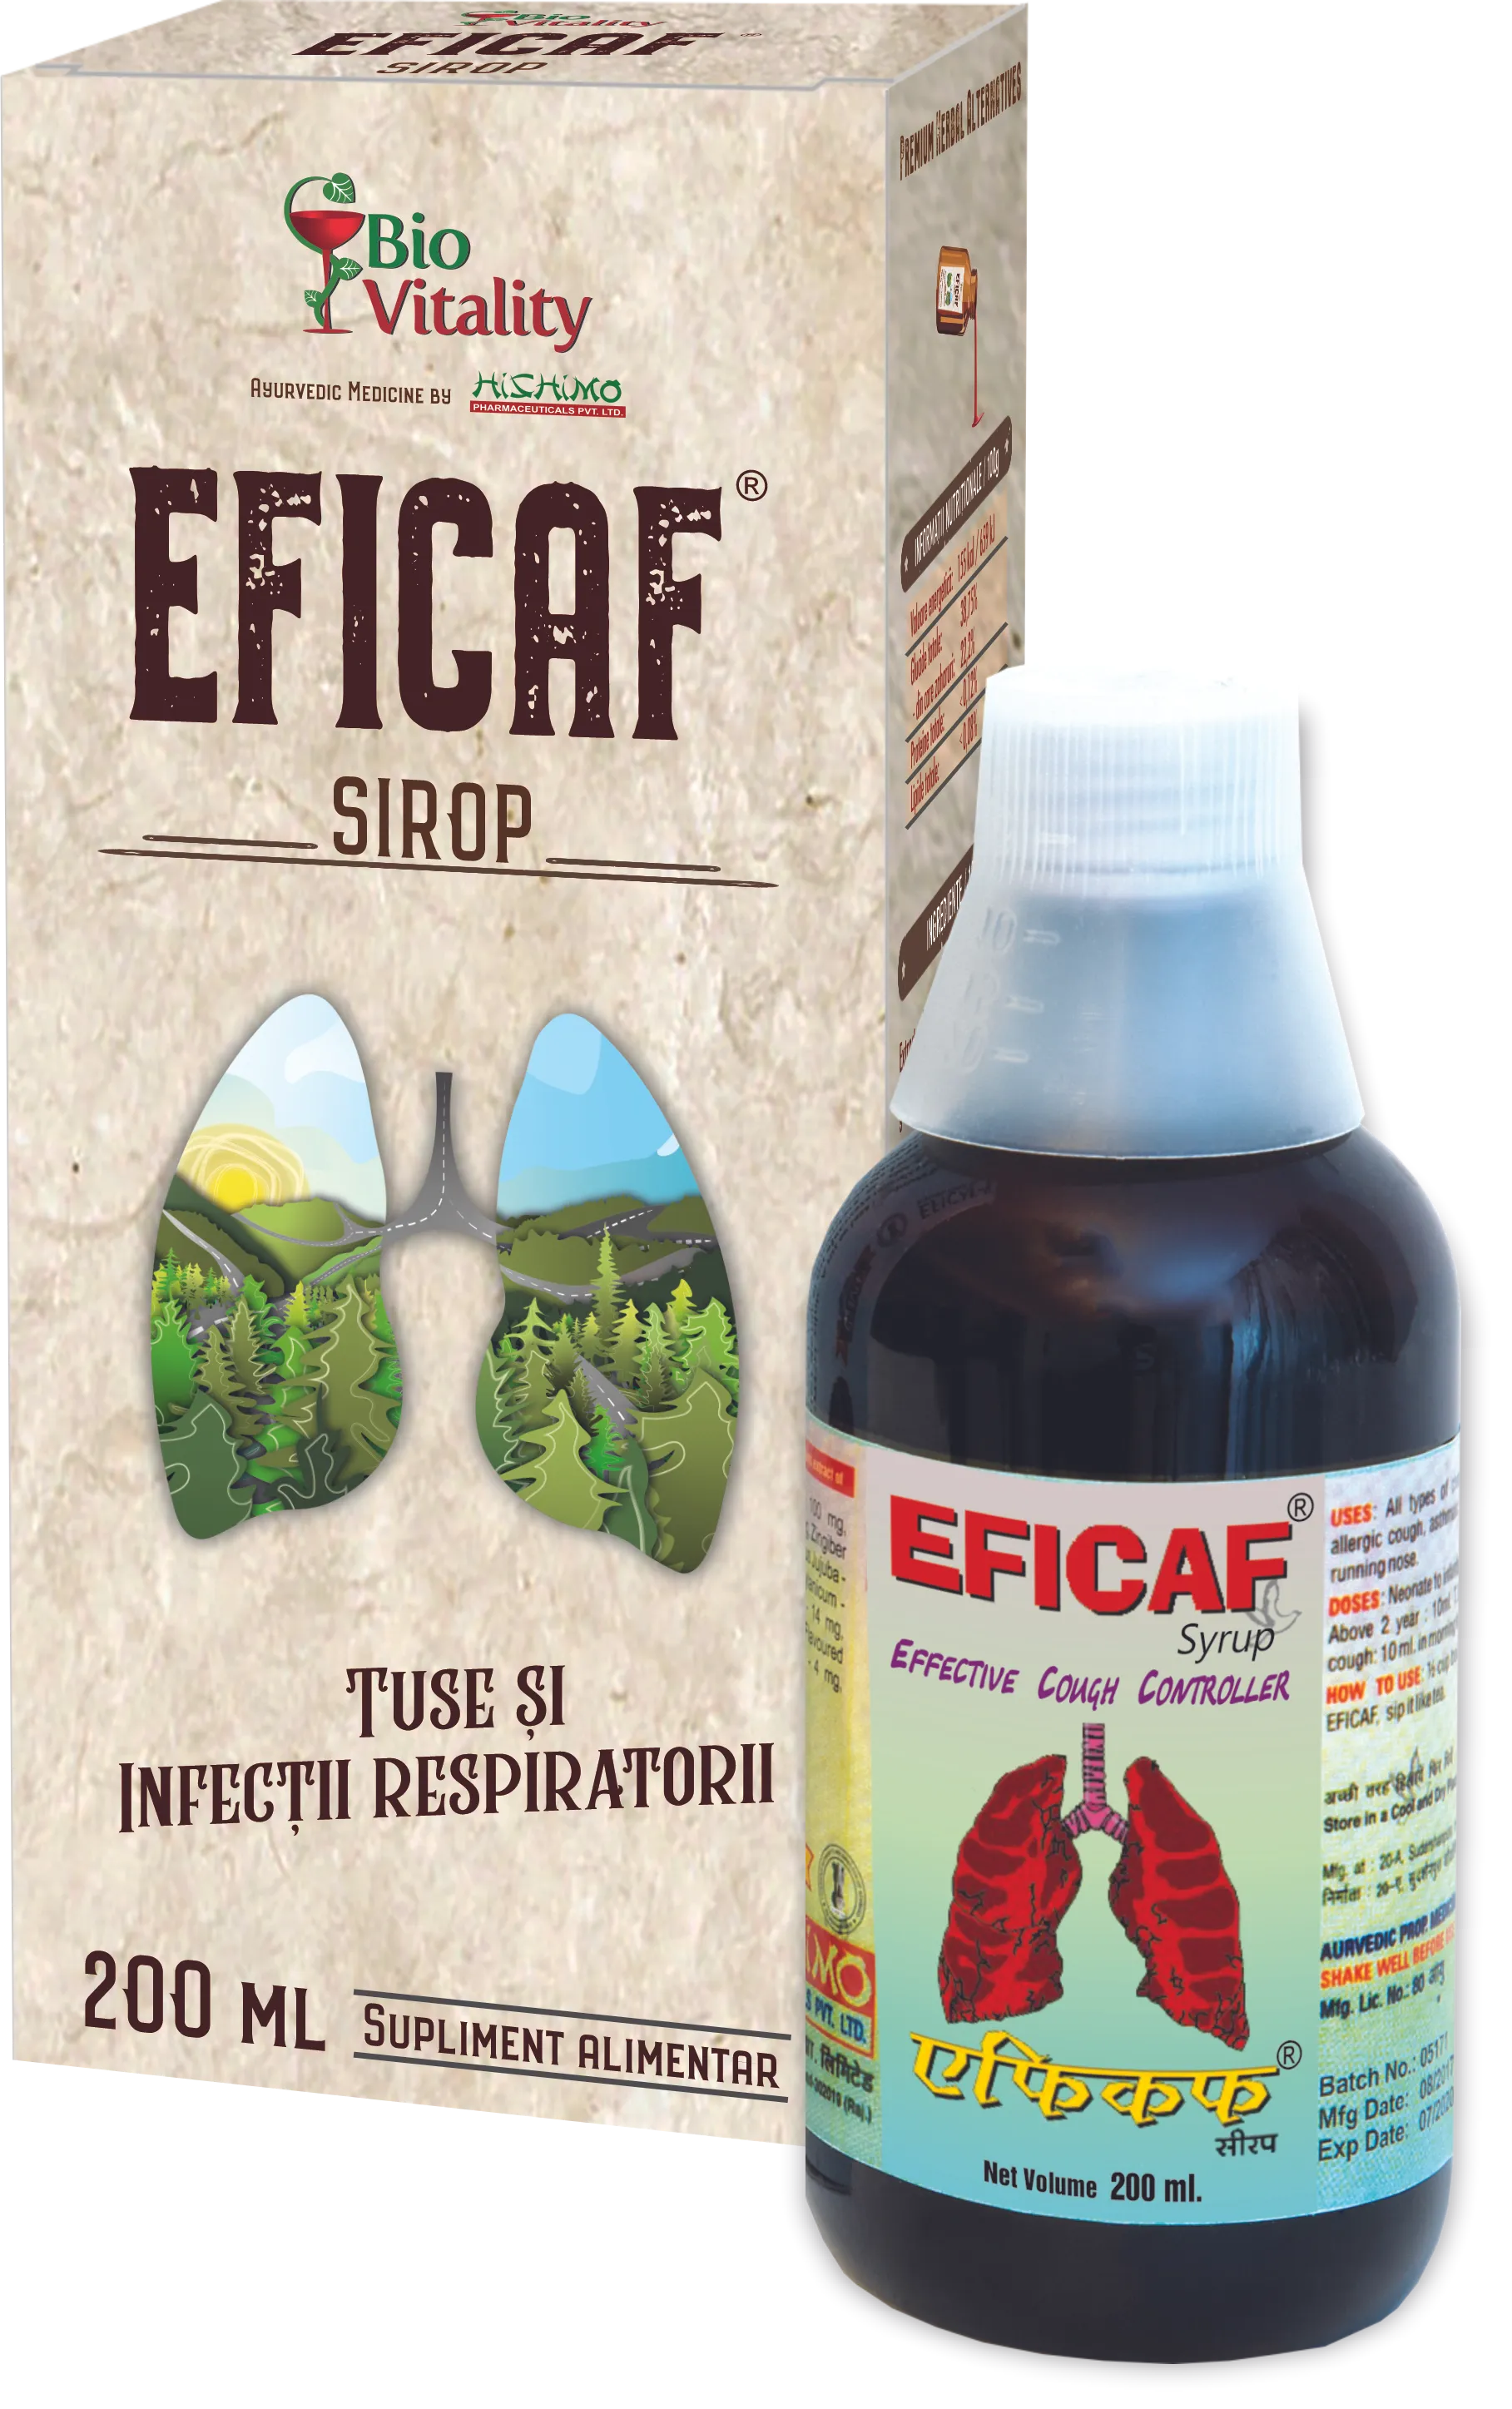 Eficaf-R sirop 200 ml, Bio Vitality 